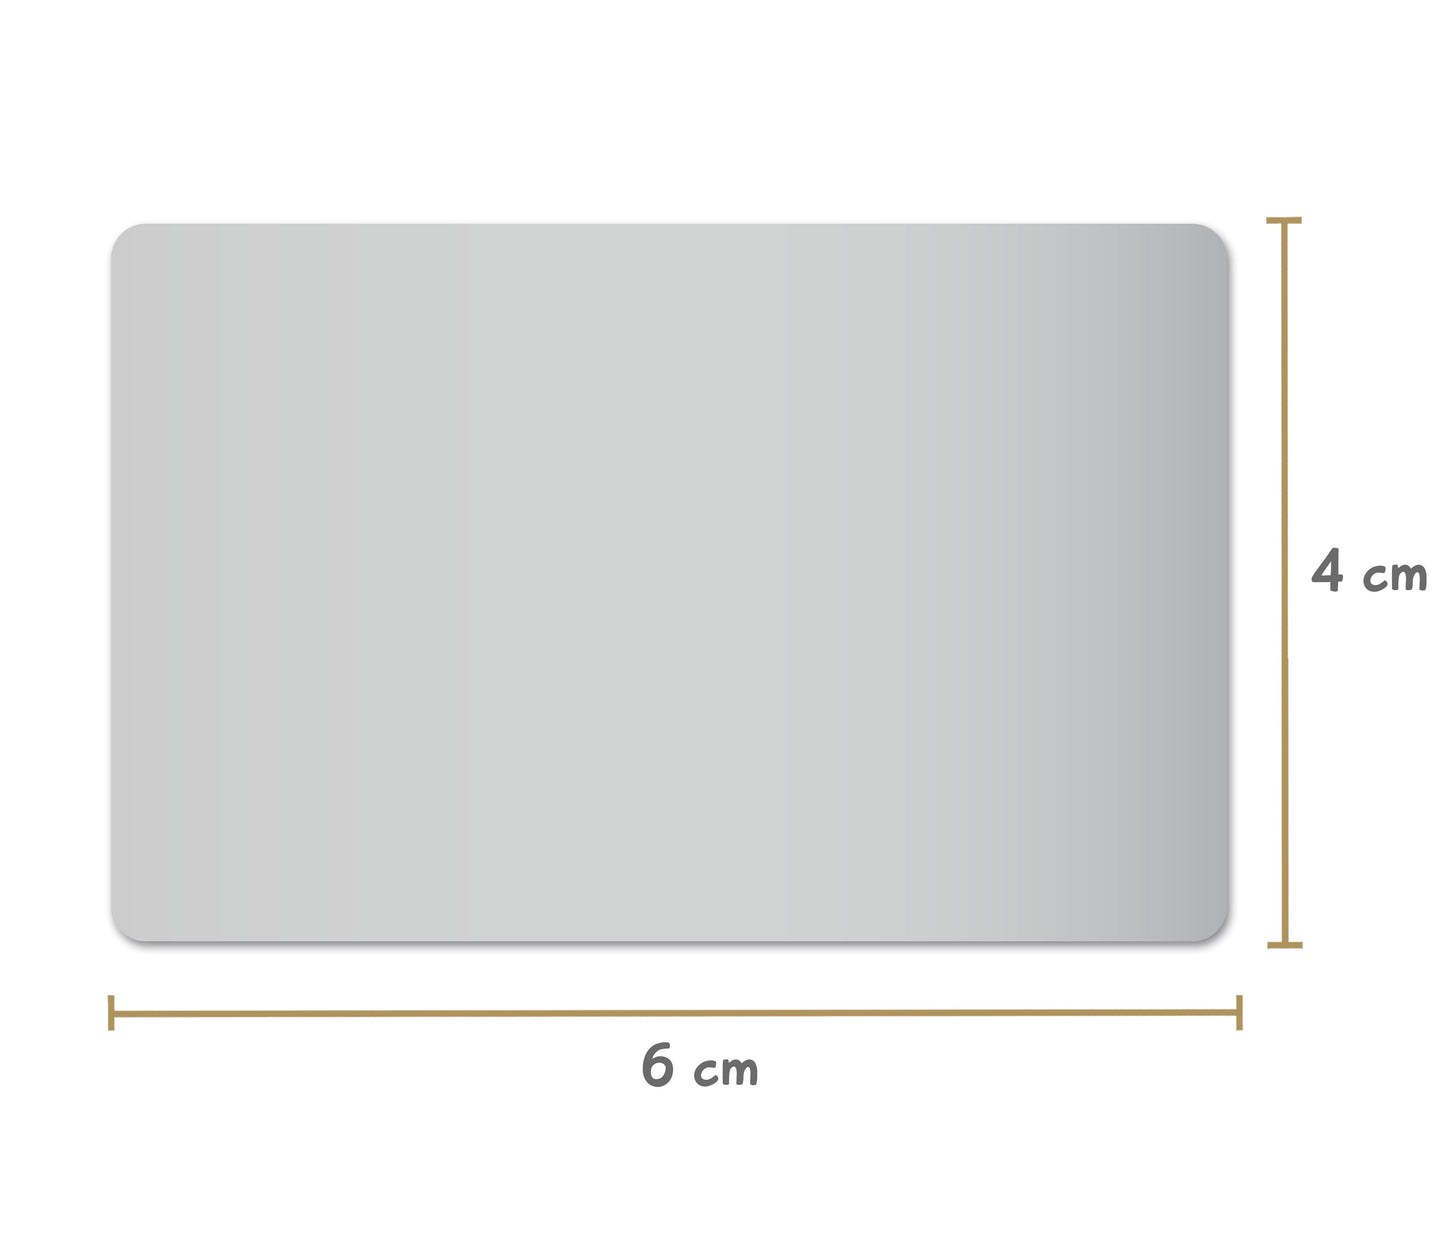 Ansicht der Maße Rubbeletikett silber rechteckig 6 mal 4 Zentimeter